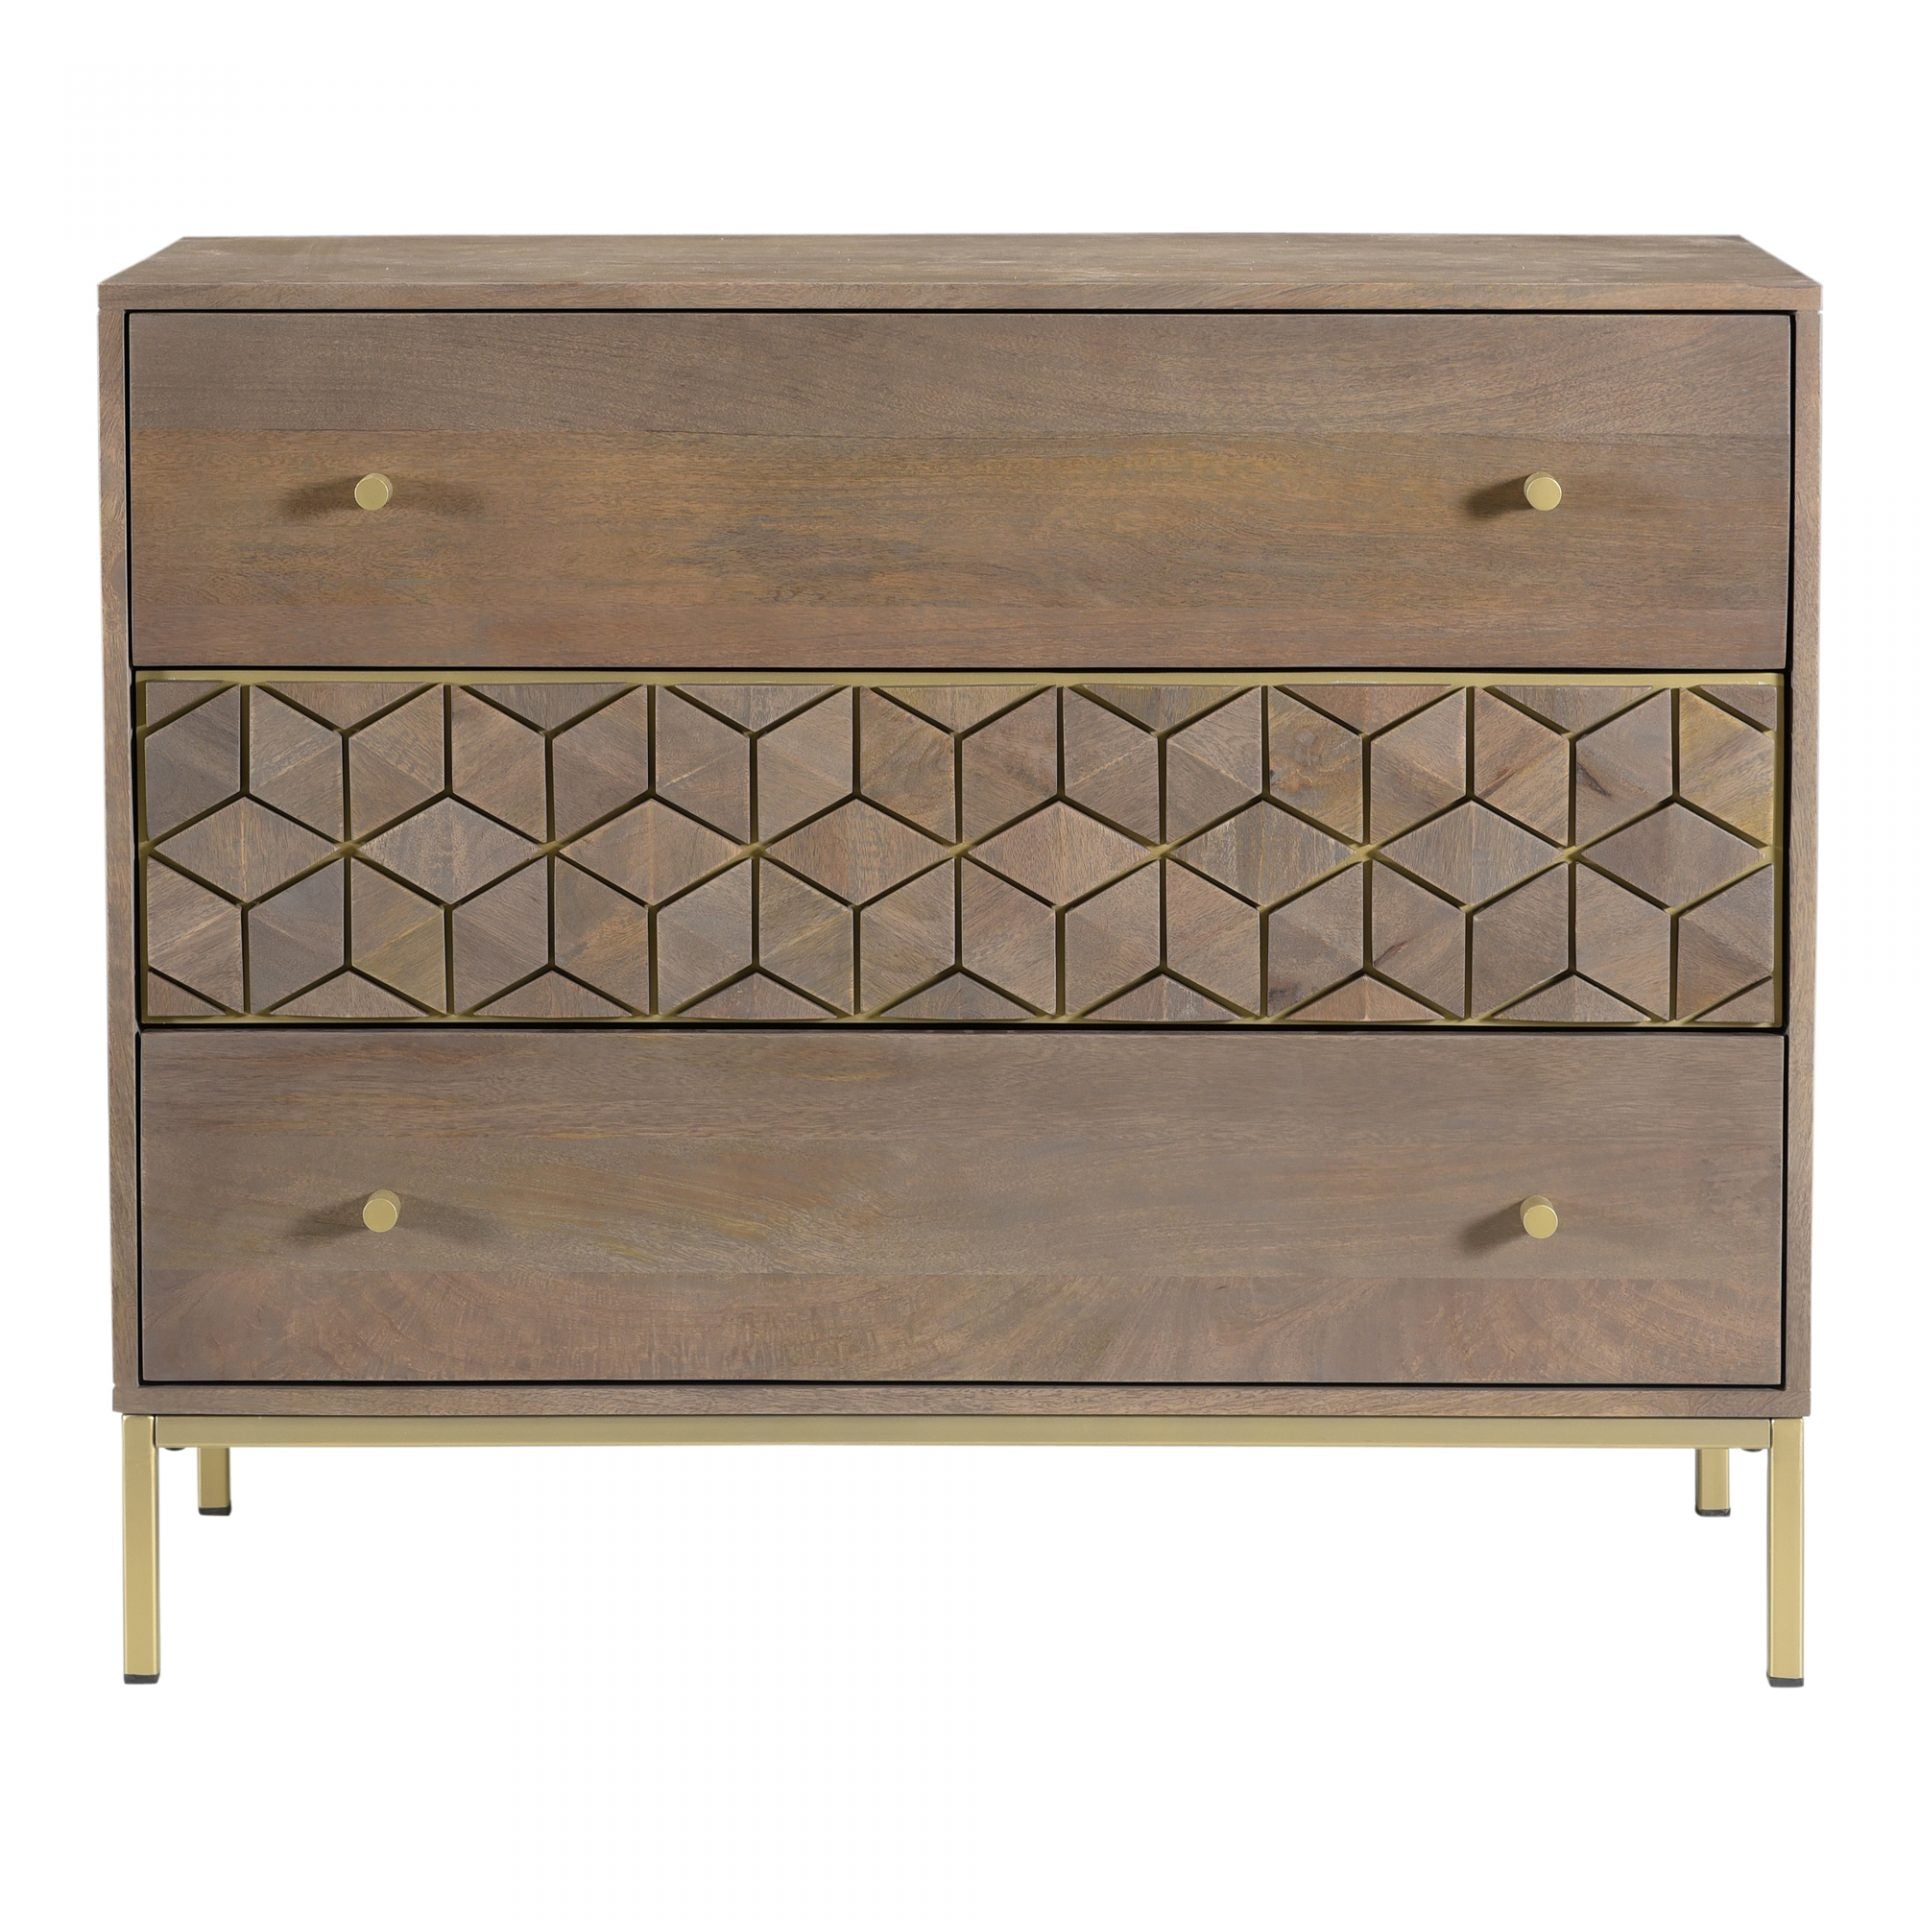 Collette Modern Art Deco Inspired 3 Drawer Dresser - Rustic Edge